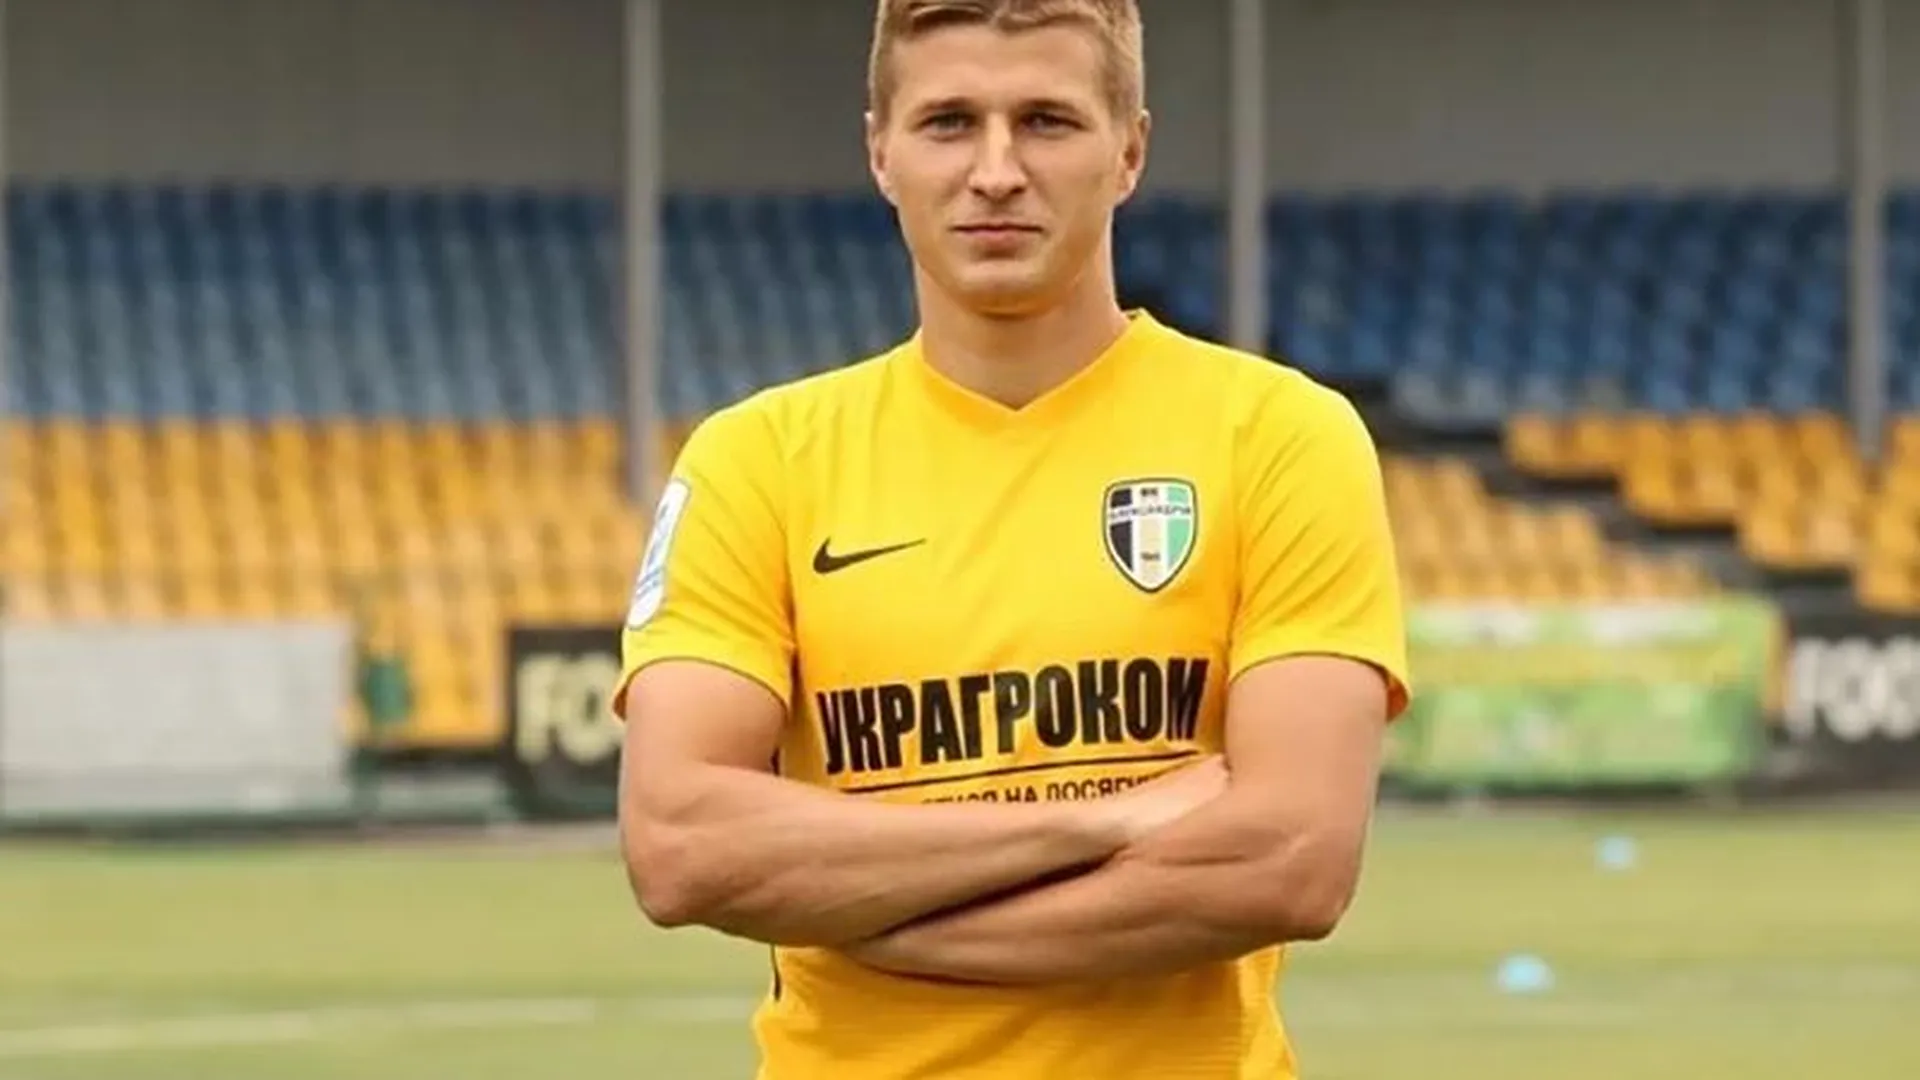 Футбольные «Химки» намерены подписать контракт с игроком сборной Украины